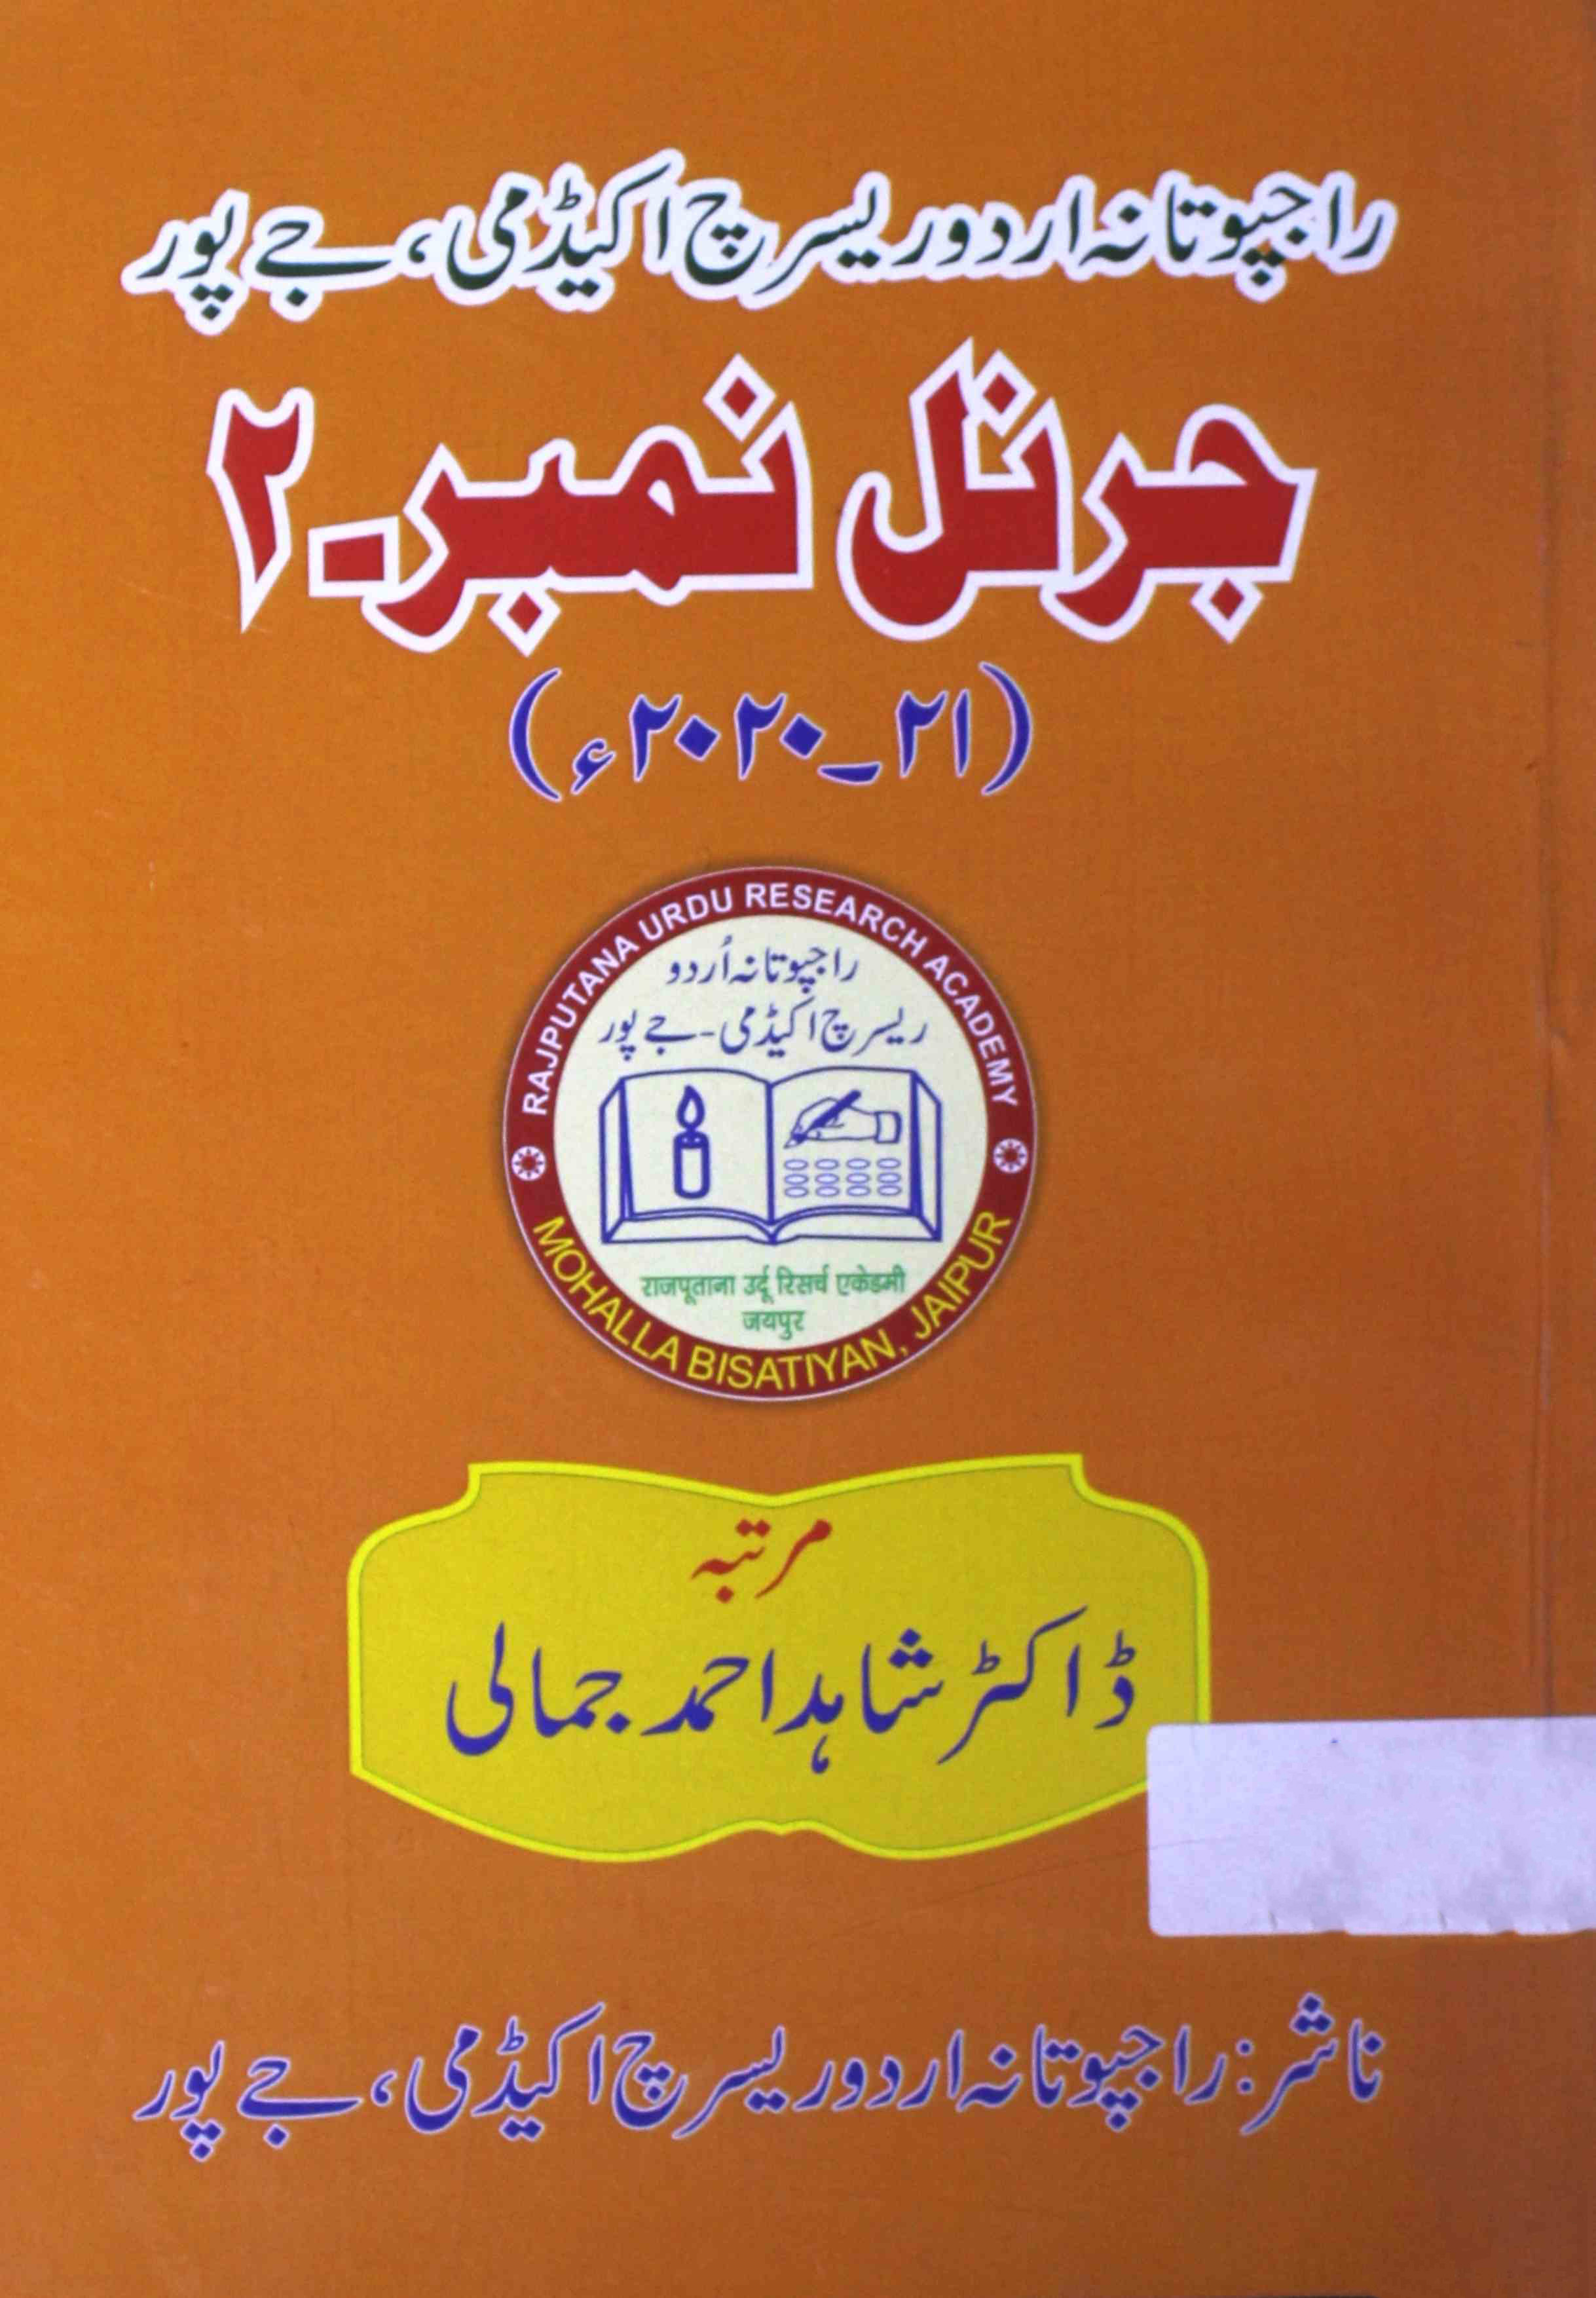 raajputaana urdu research academy, jaipur journal number 2